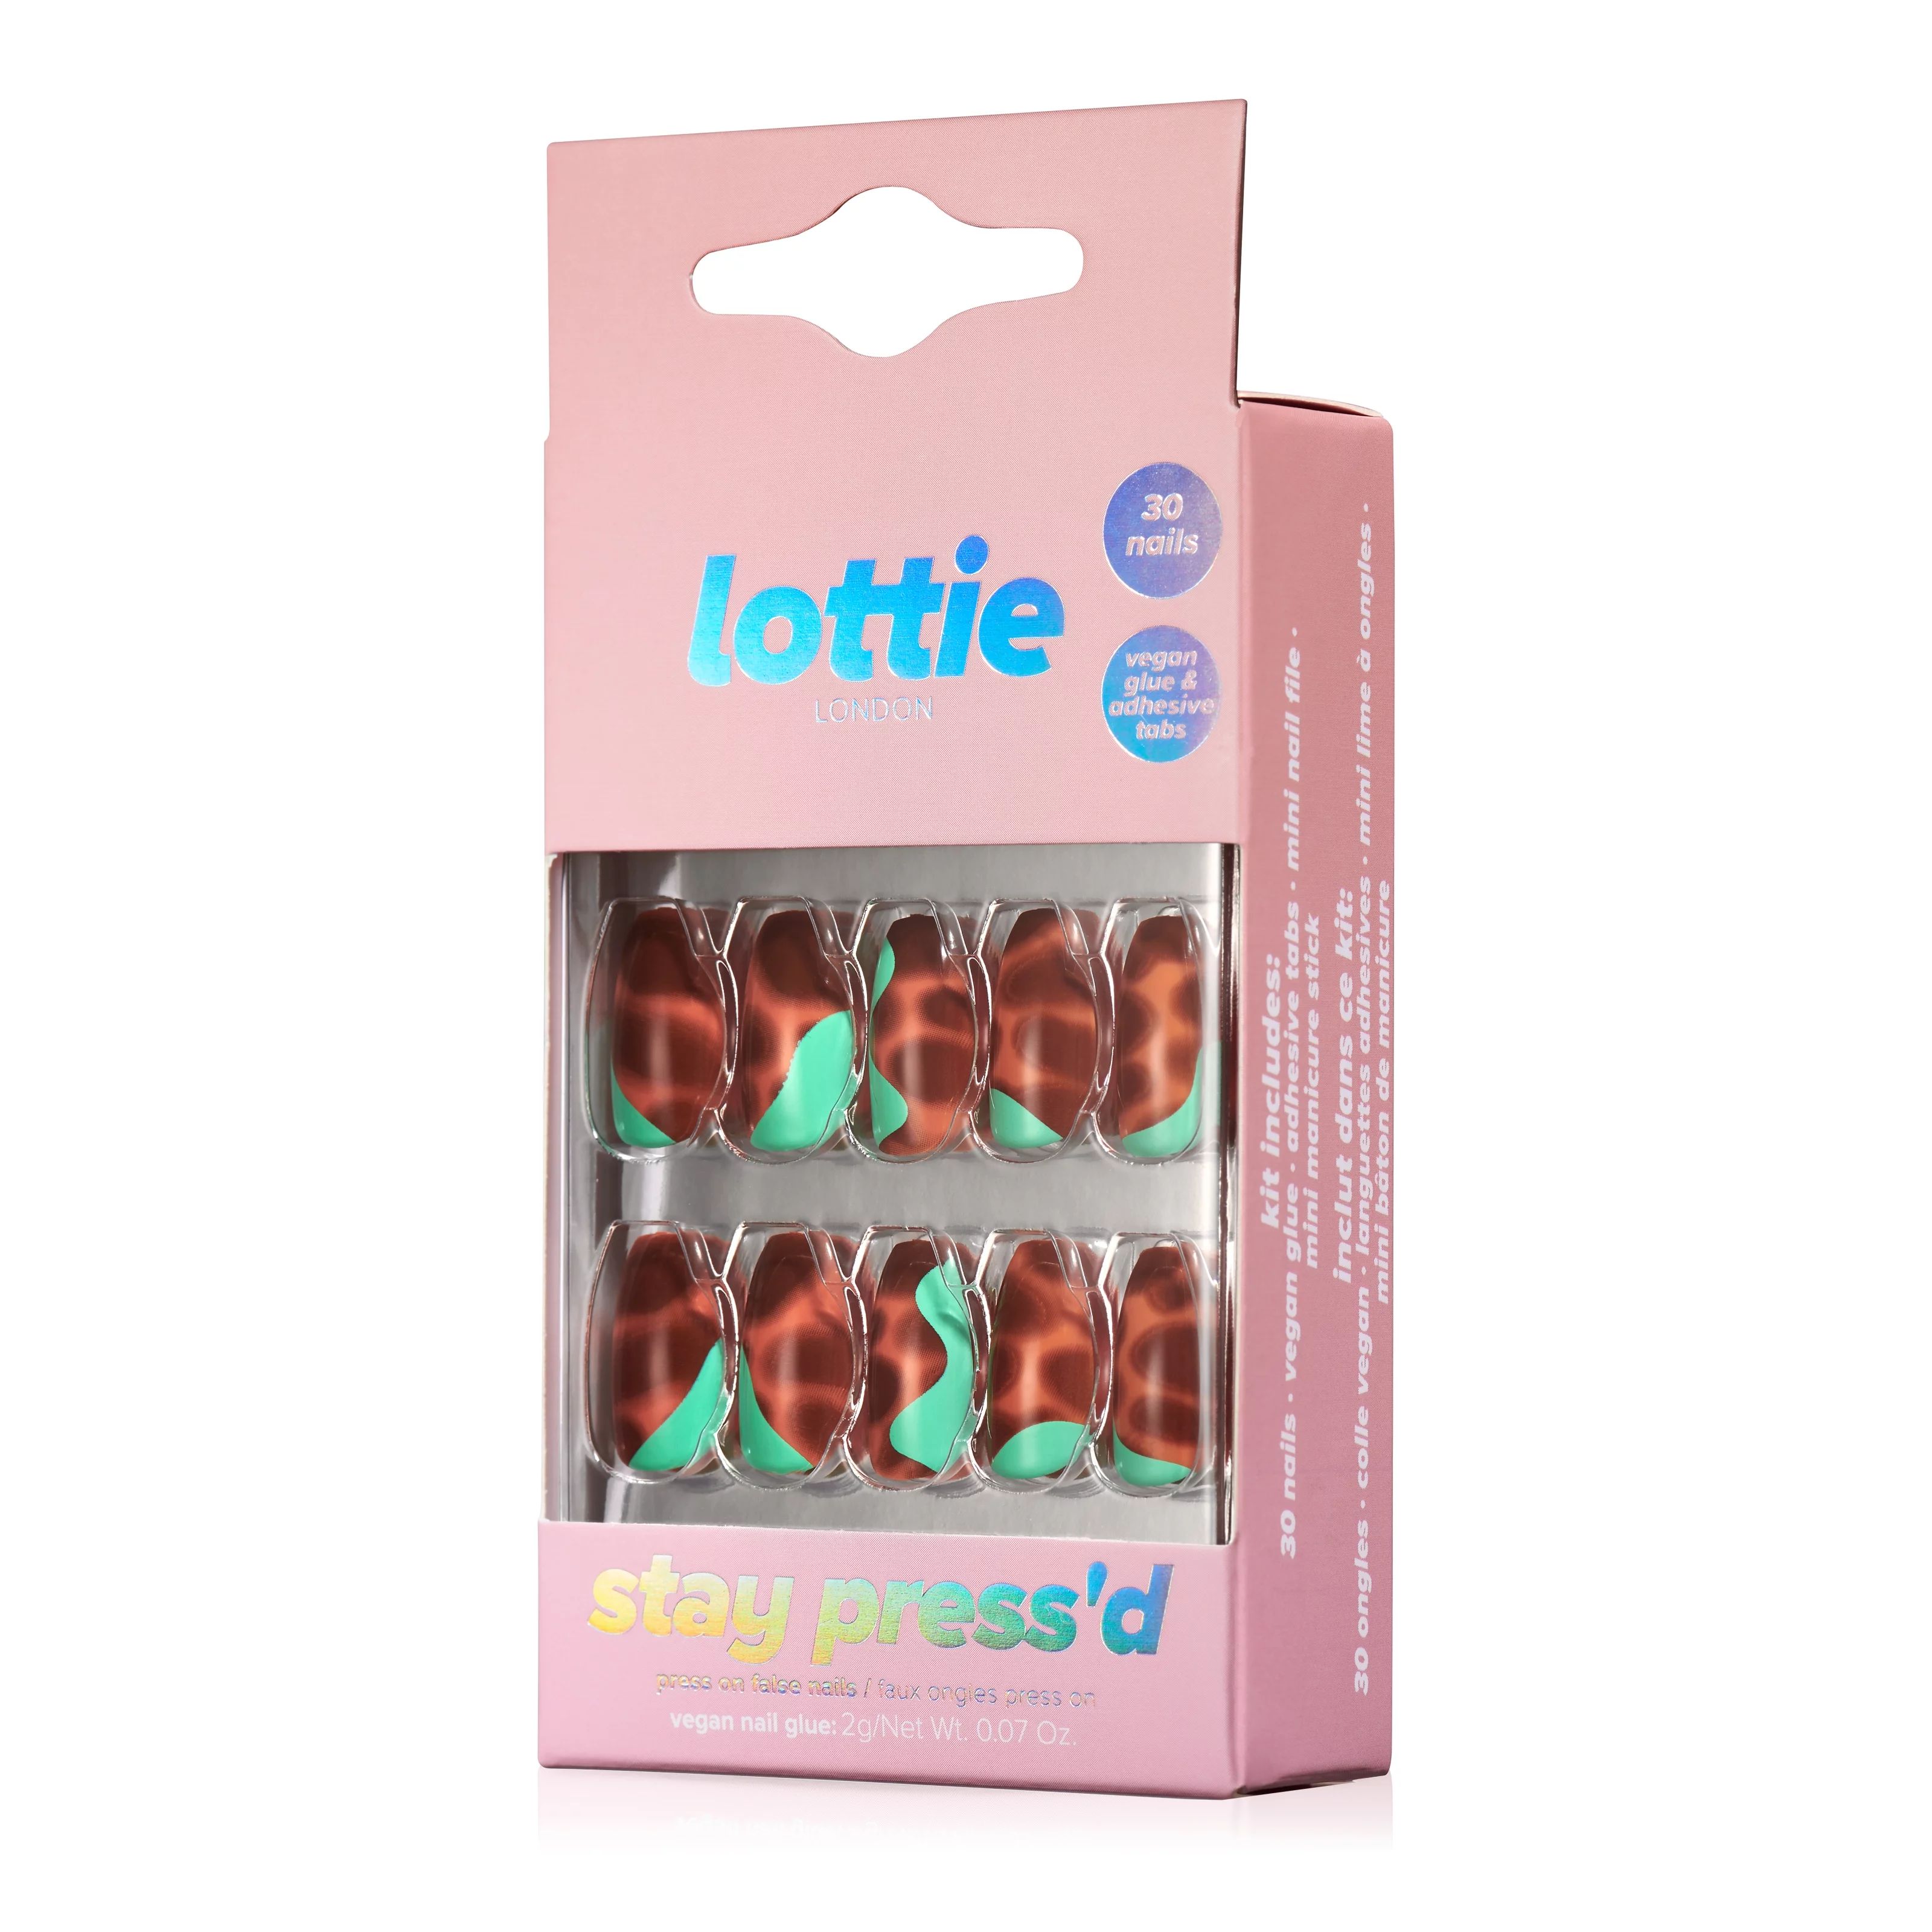 Lottie London Stay Press'd, Press On Nails Set, Squareletto shape,Tortoiseshell twist , 30 nails | Walmart (US)